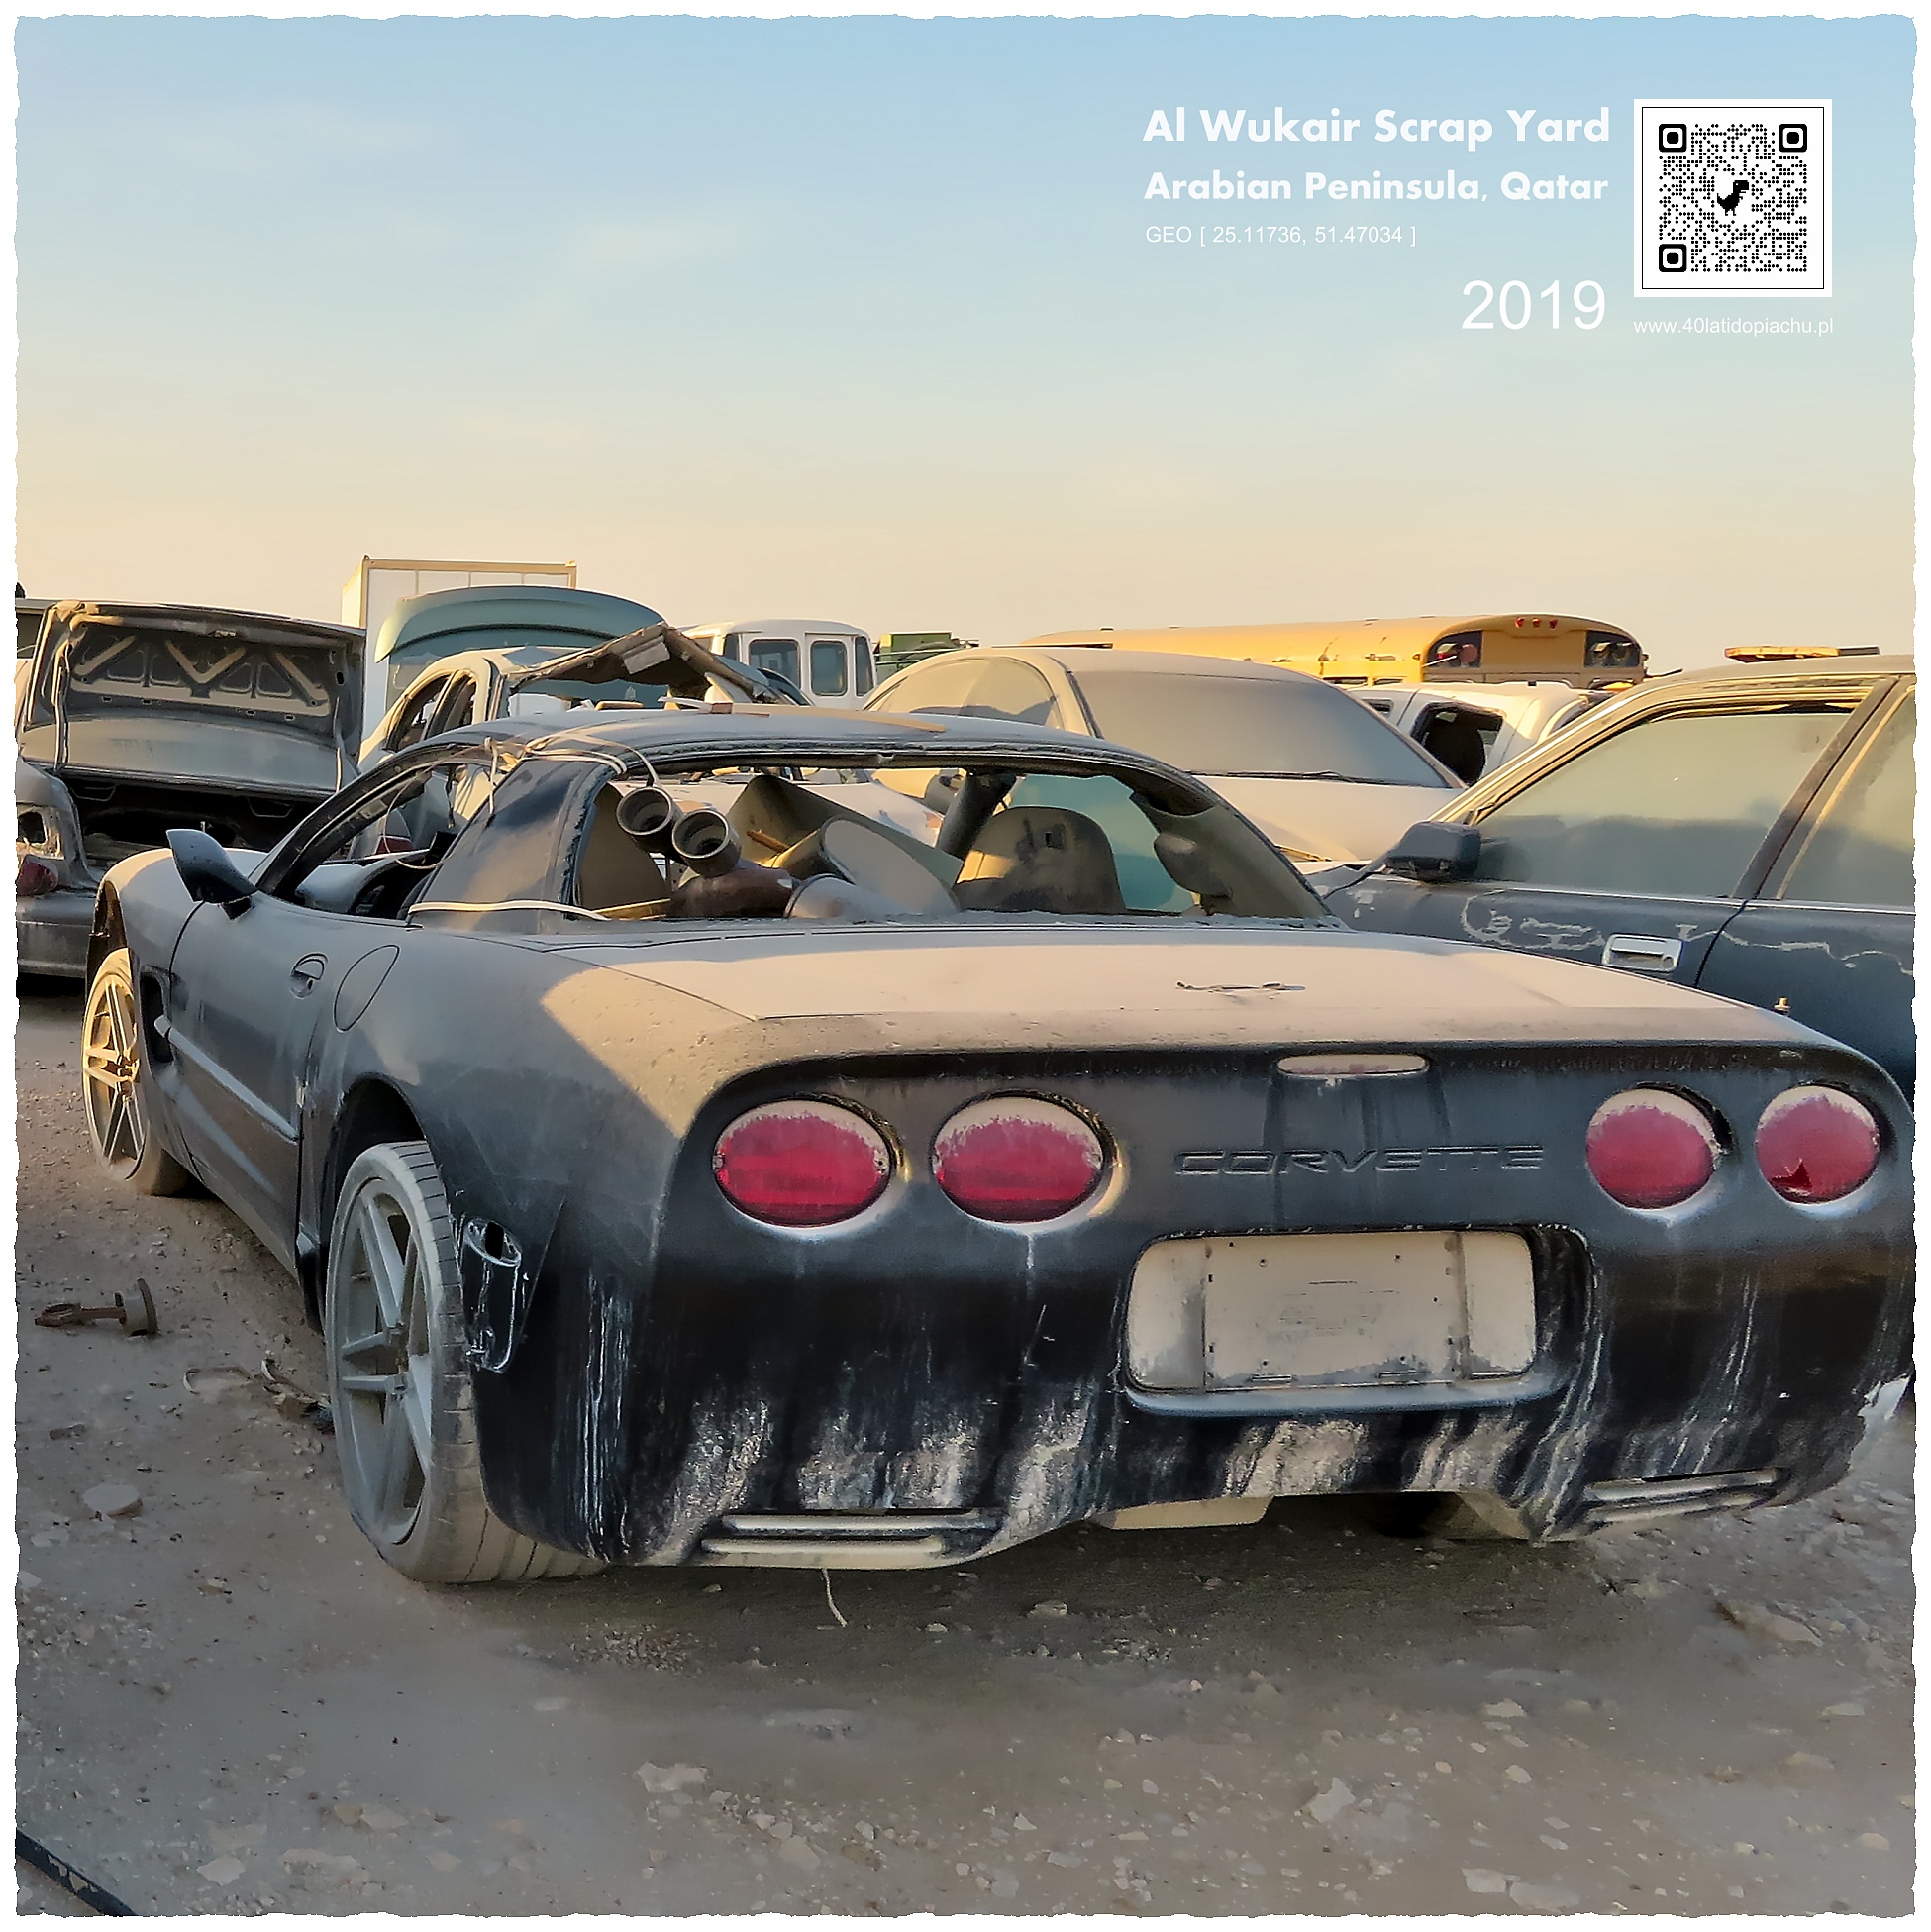 Katar: złomowisko samochodów Al Wukair Scrap Yard